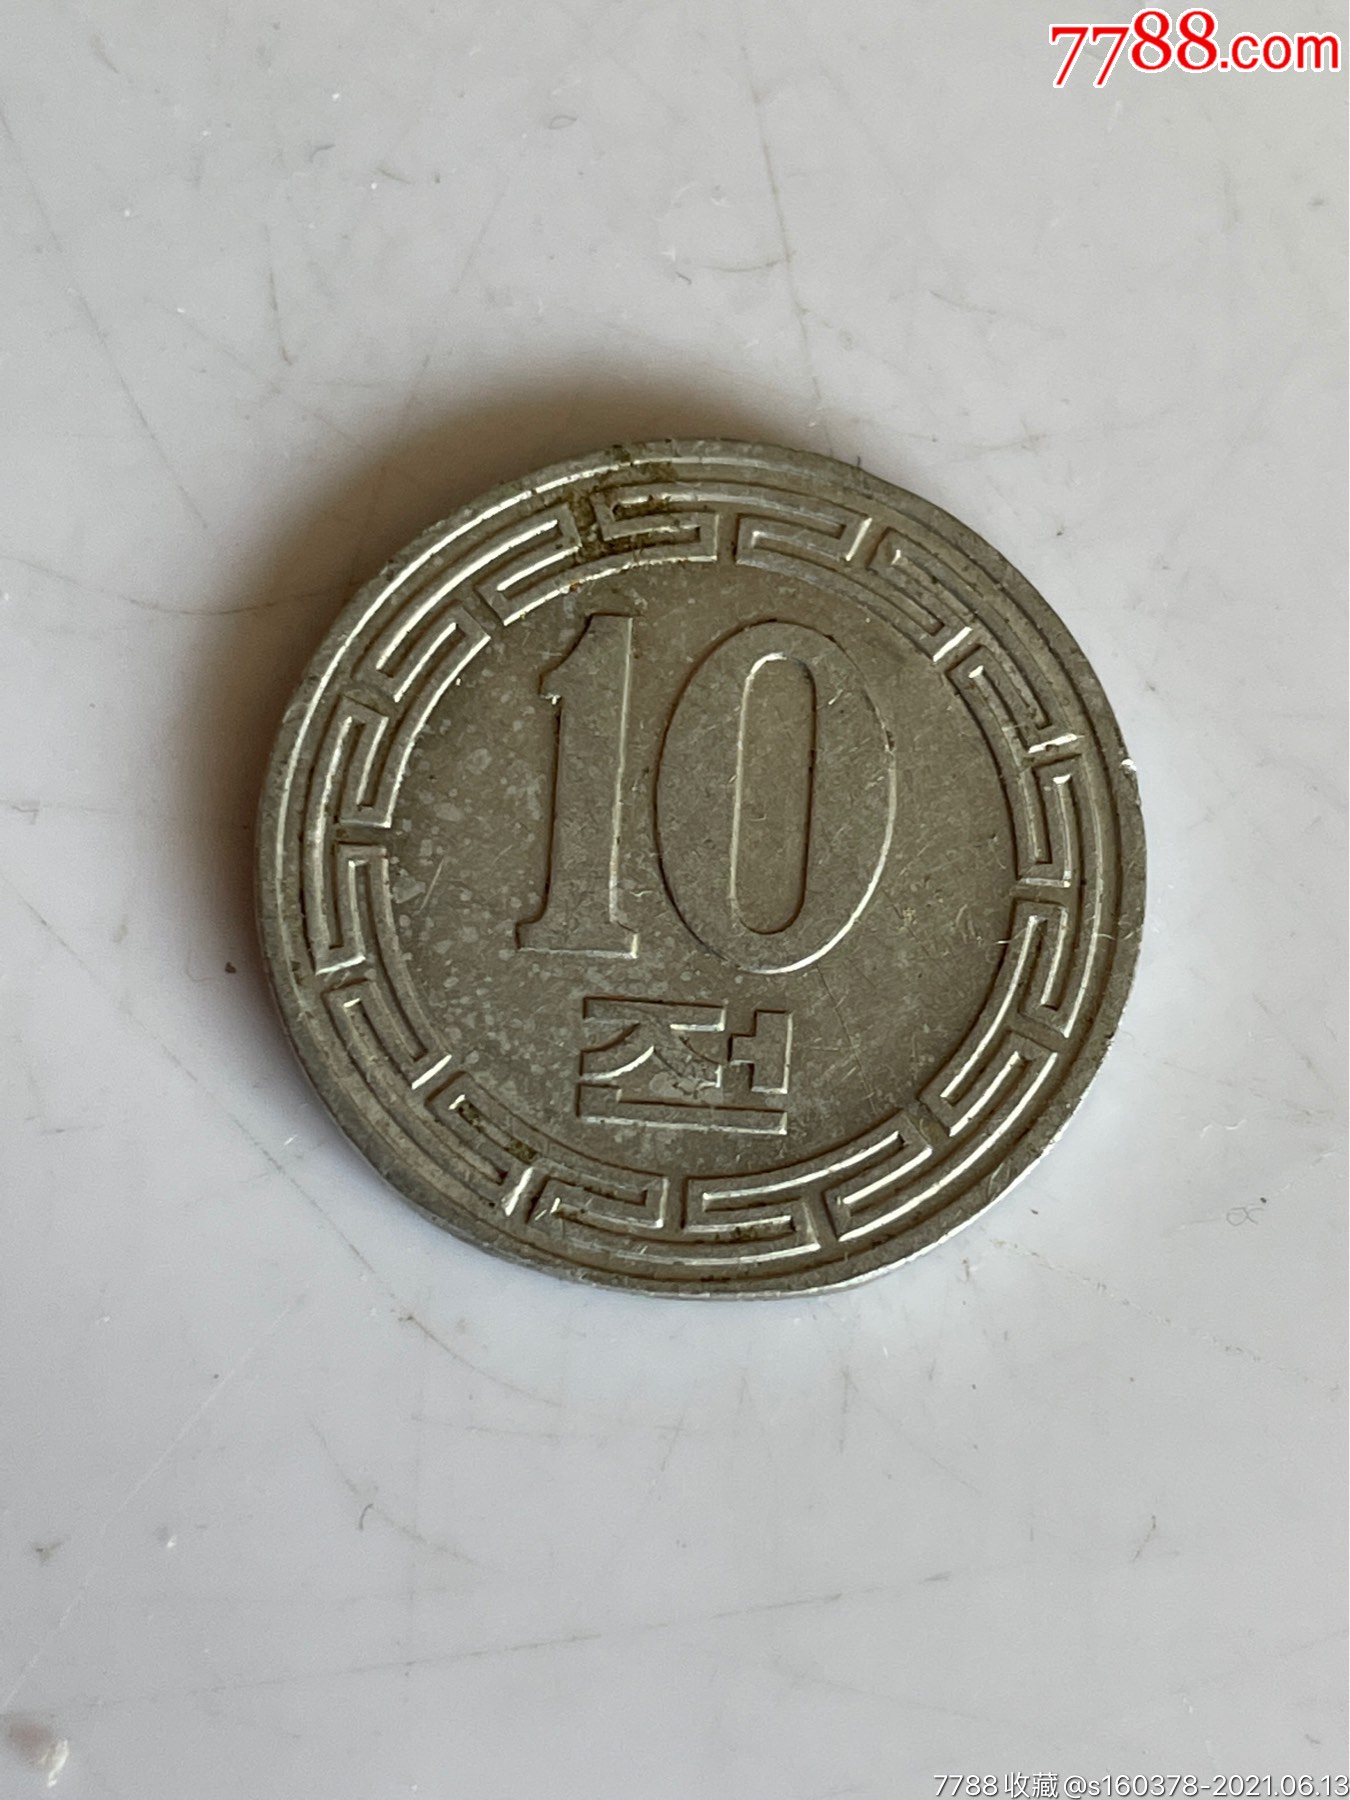 朝鲜10元硬币约20mm铝币朝鲜硬币外国硬币